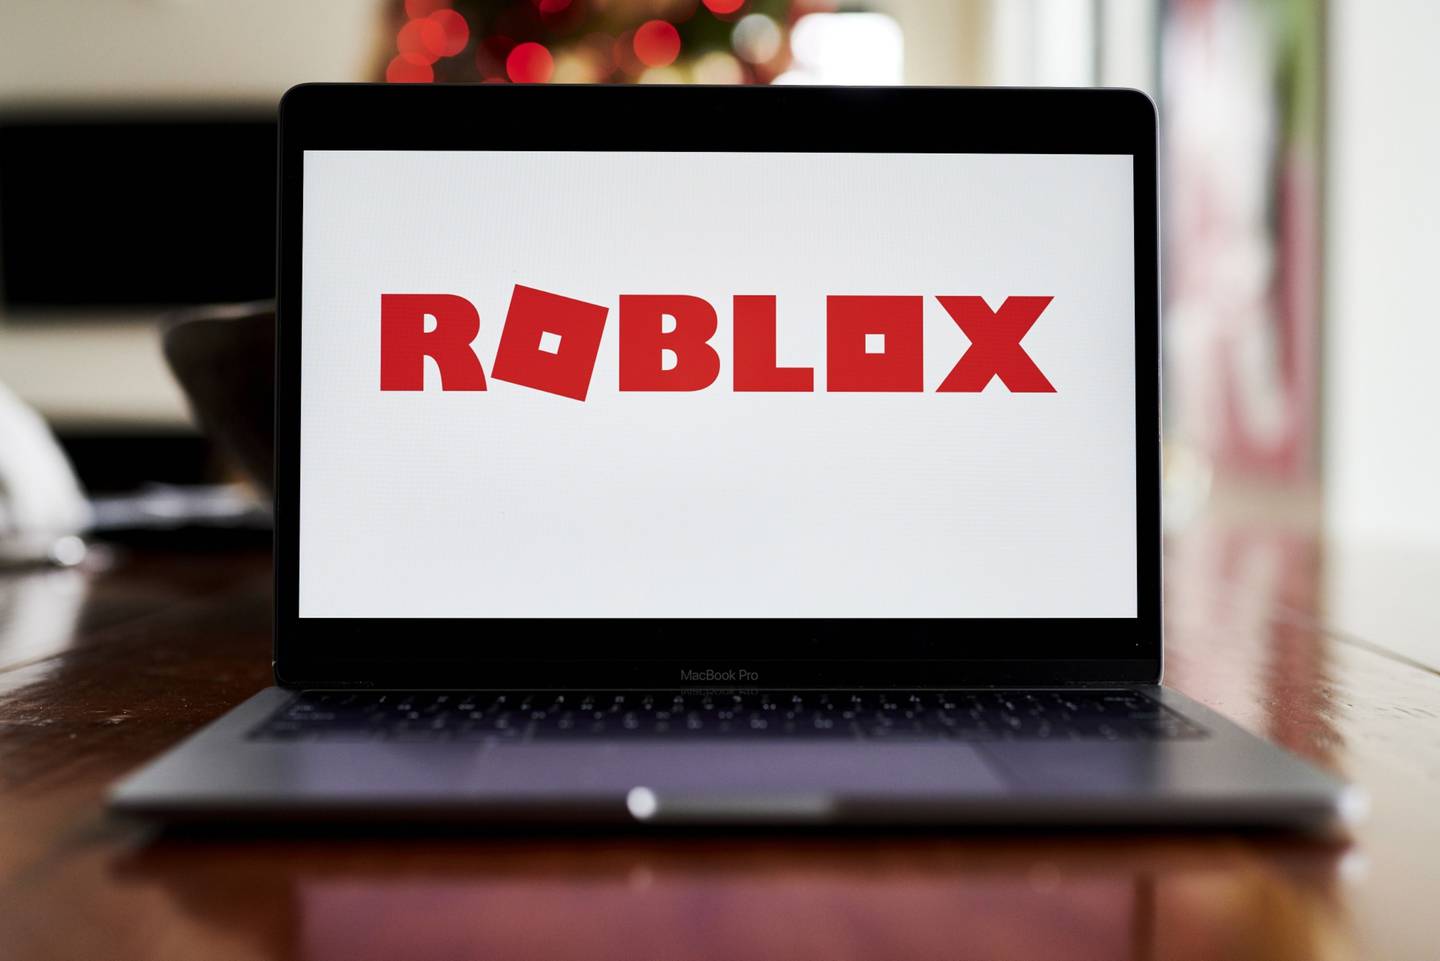 Señalización de Roblox Corp. en un ordenador portátil dispuesto en Little Falls, Nueva Jersey, Estados Unidos, el miércoles 9 de diciembre de 2020. Roblox diseña y desarrolla juegos en línea como juegos tridimensionales y tutoriales en Internet. Fotógrafo: Gabby Jones/Bloomberg